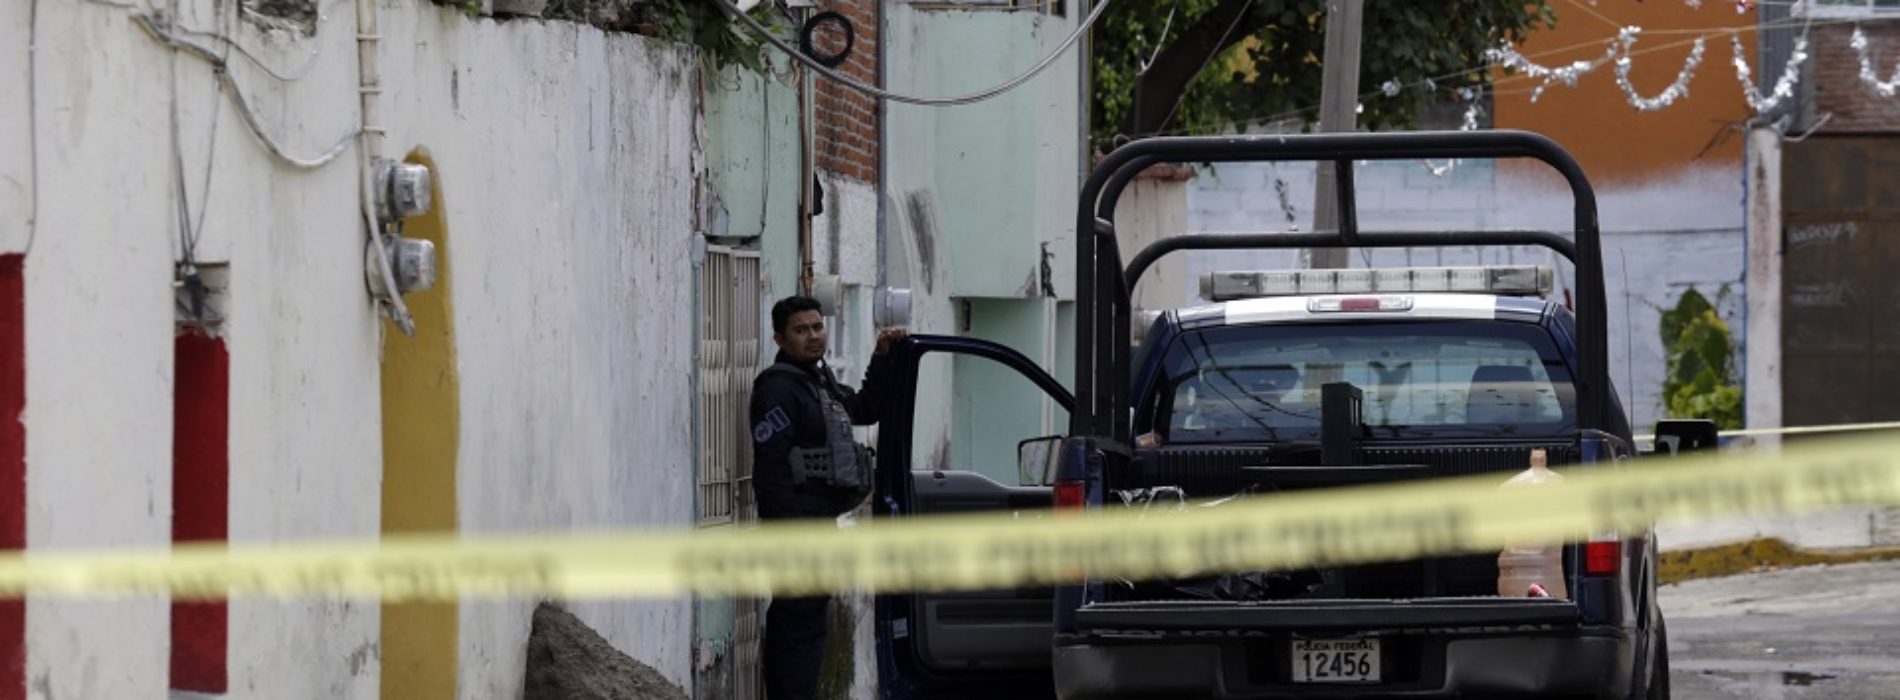 Hombres armados asesinan al alcalde de Tlanepantla,
Puebla